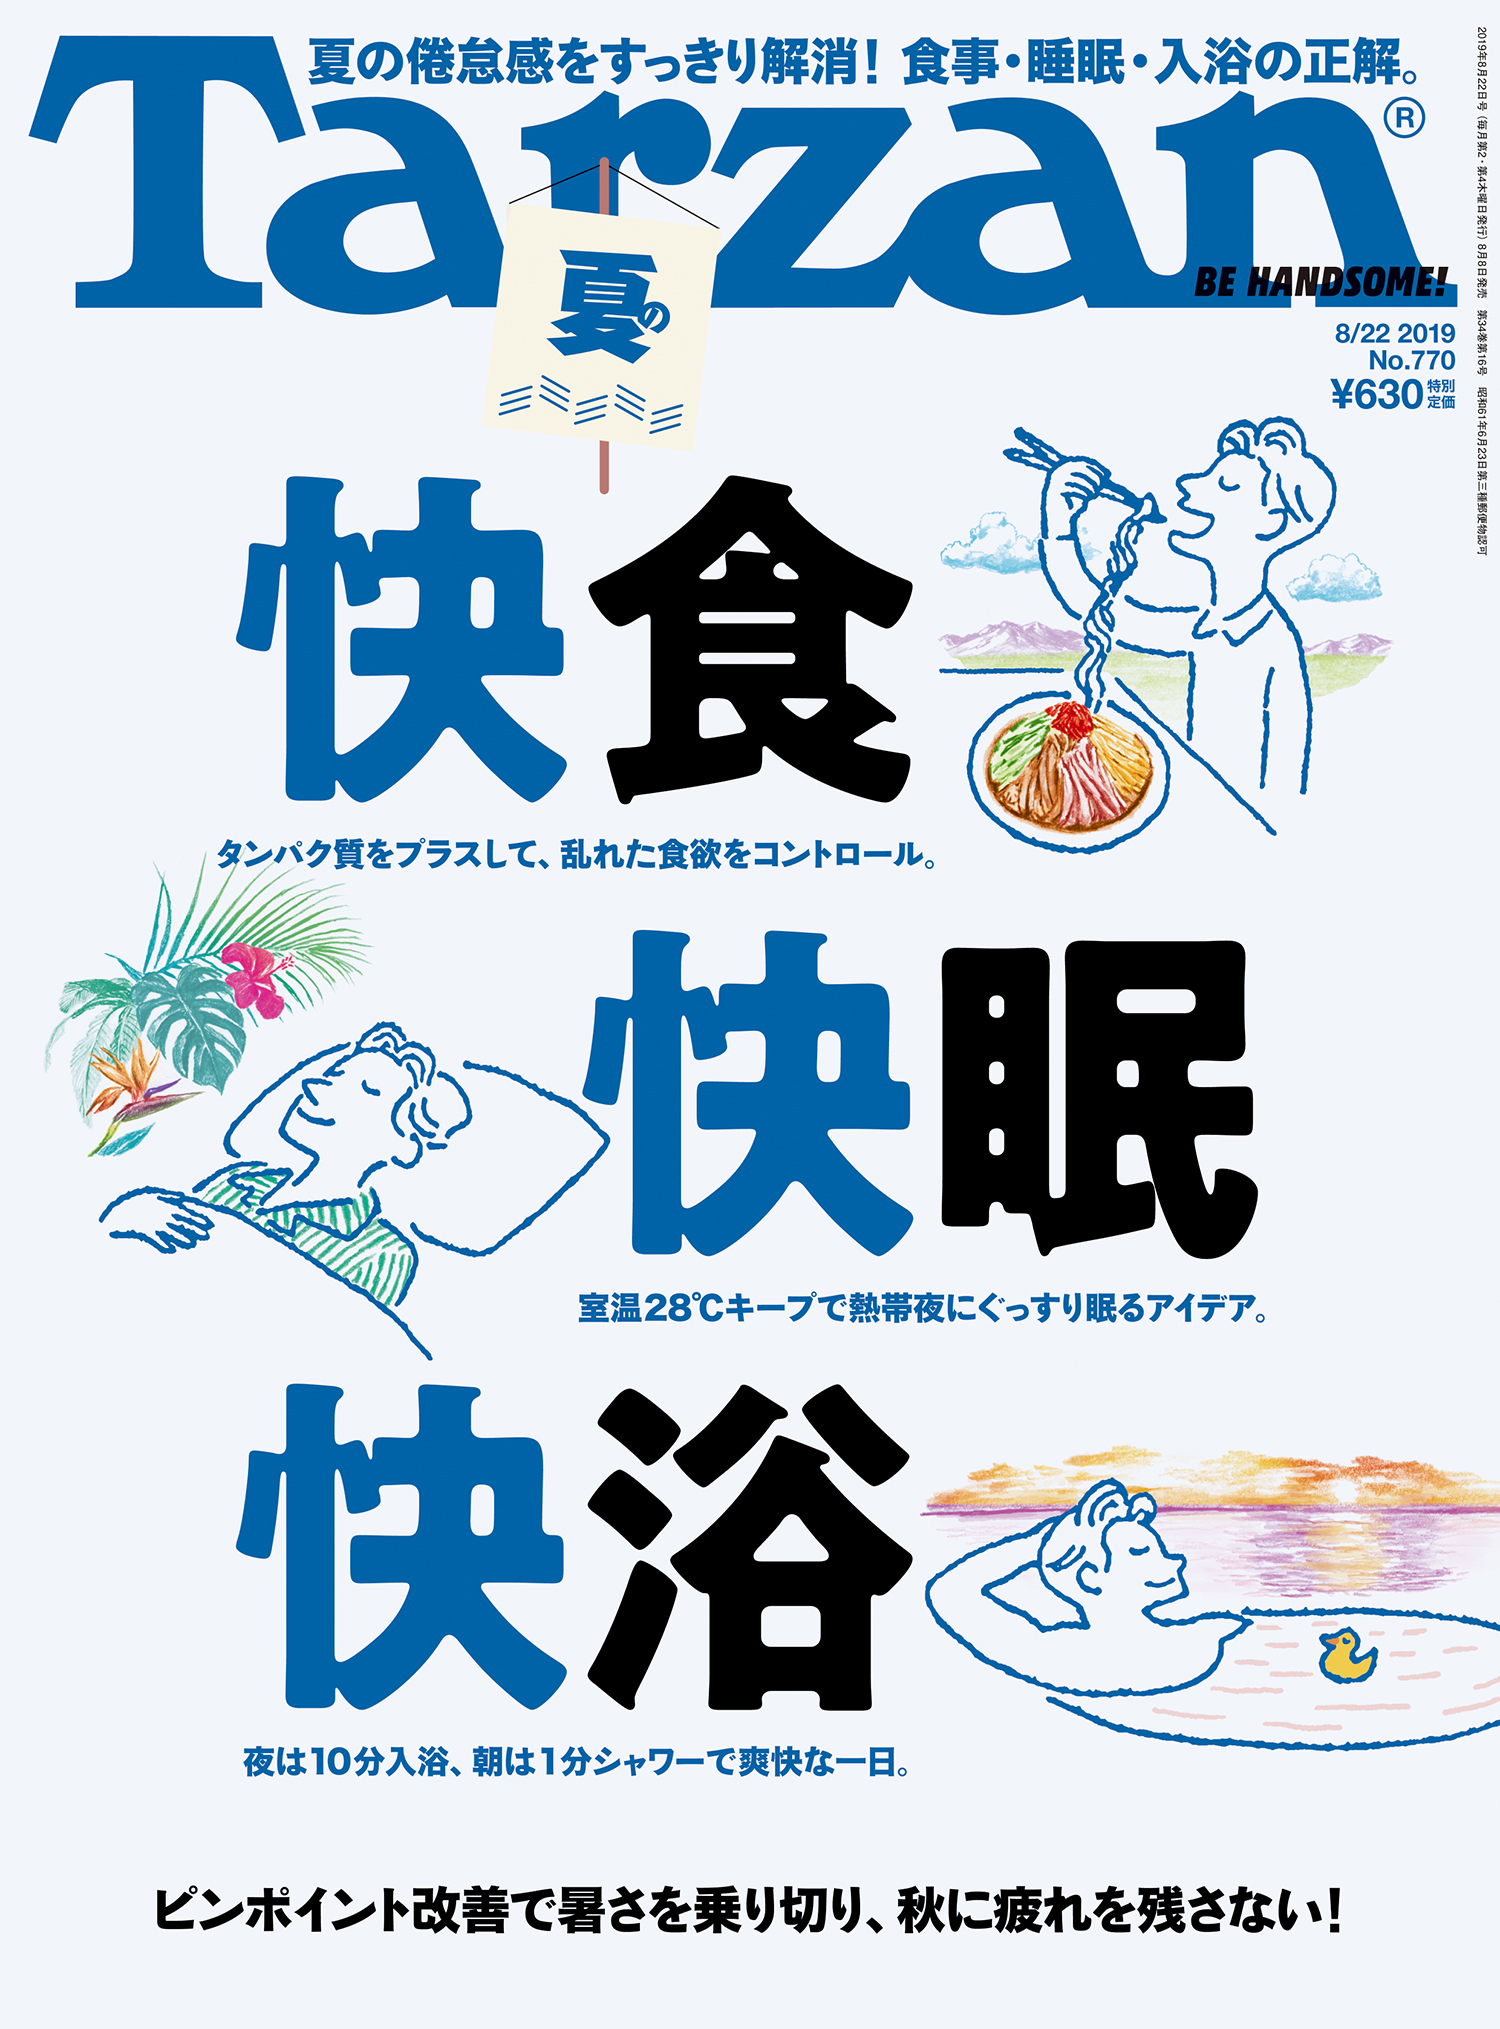 ターザン』770号「夏の快食・快眠・快浴」特集の表紙